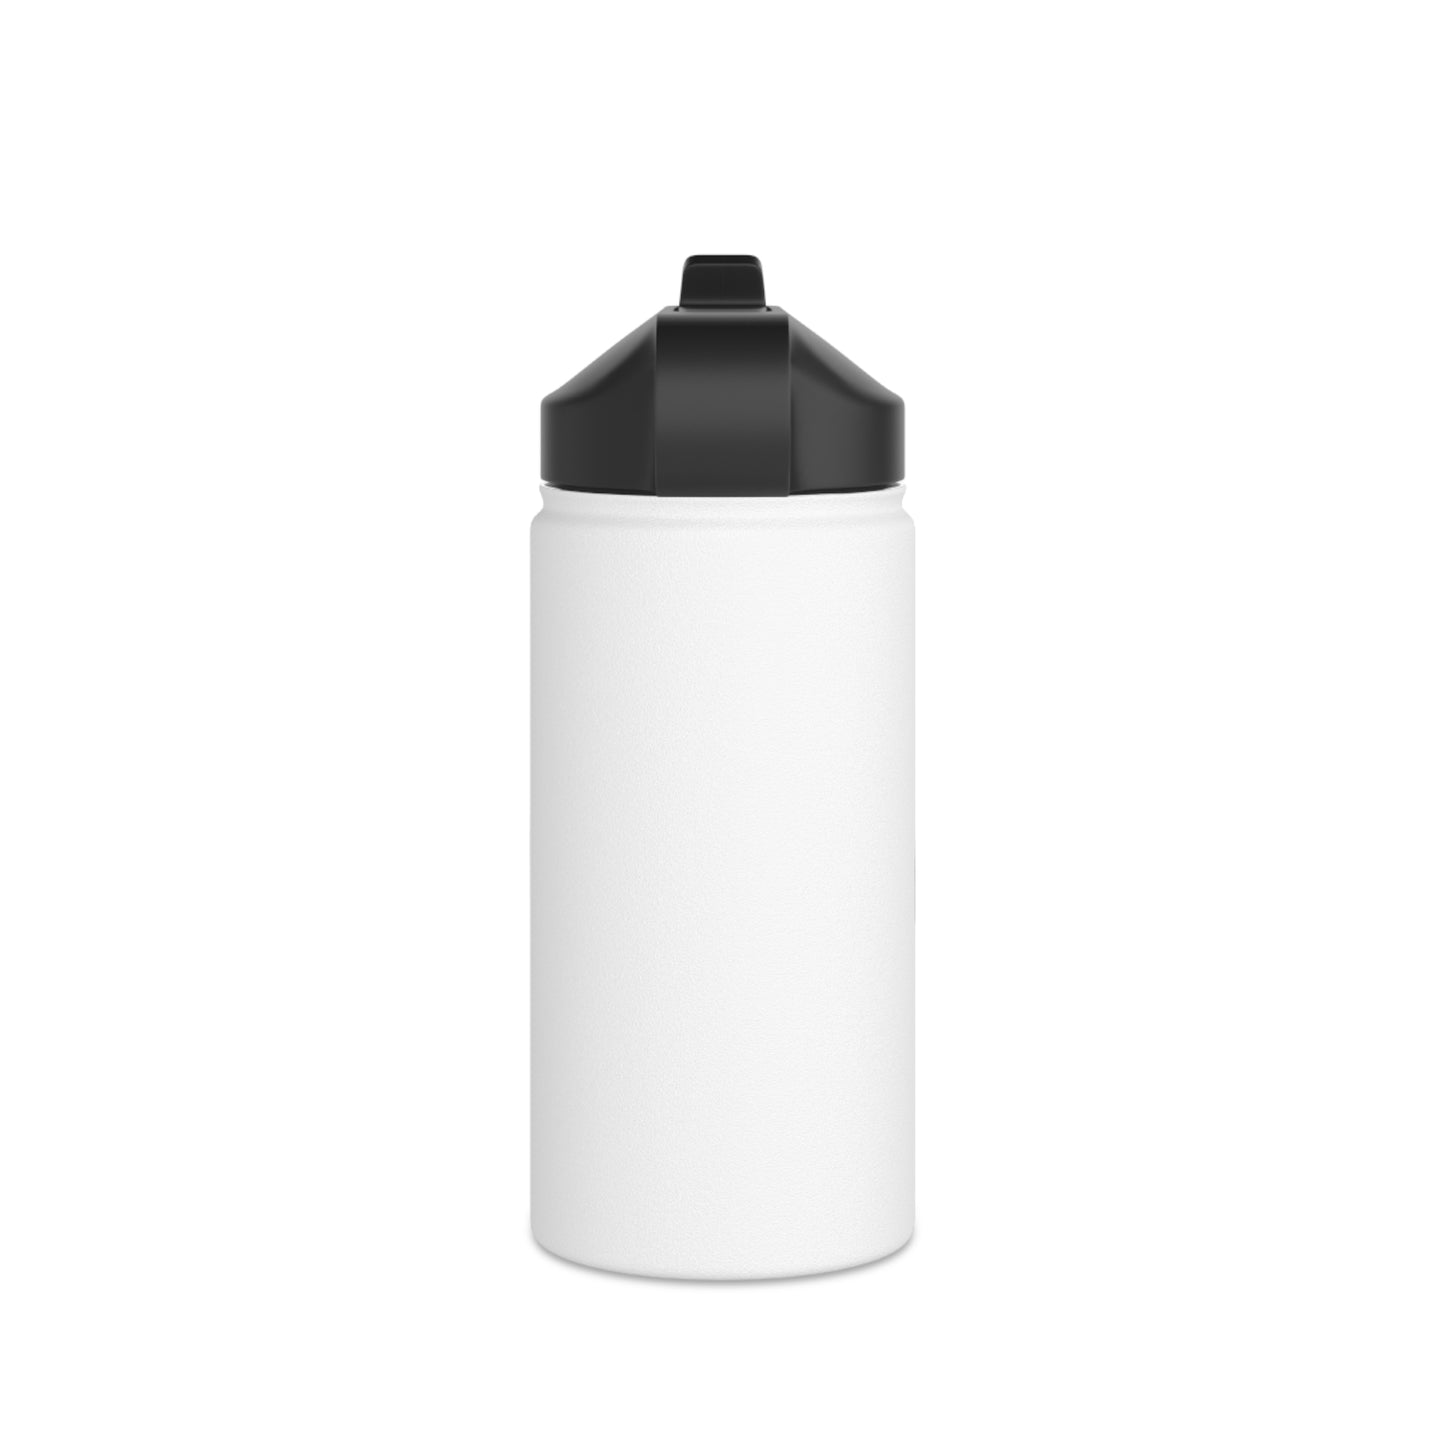 The School Bag (လွယ်အိတ်) Stainless Steel Water Bottle, Standard Lid